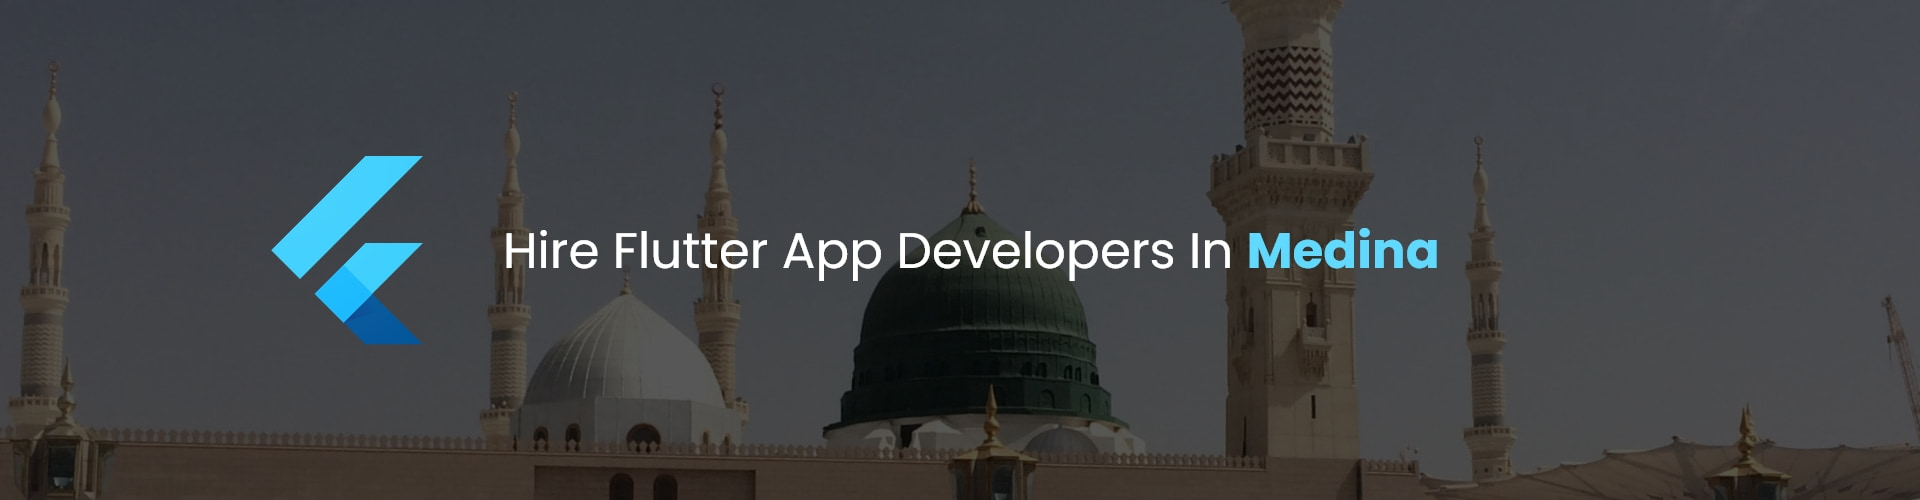 hire flutter app developers in medina